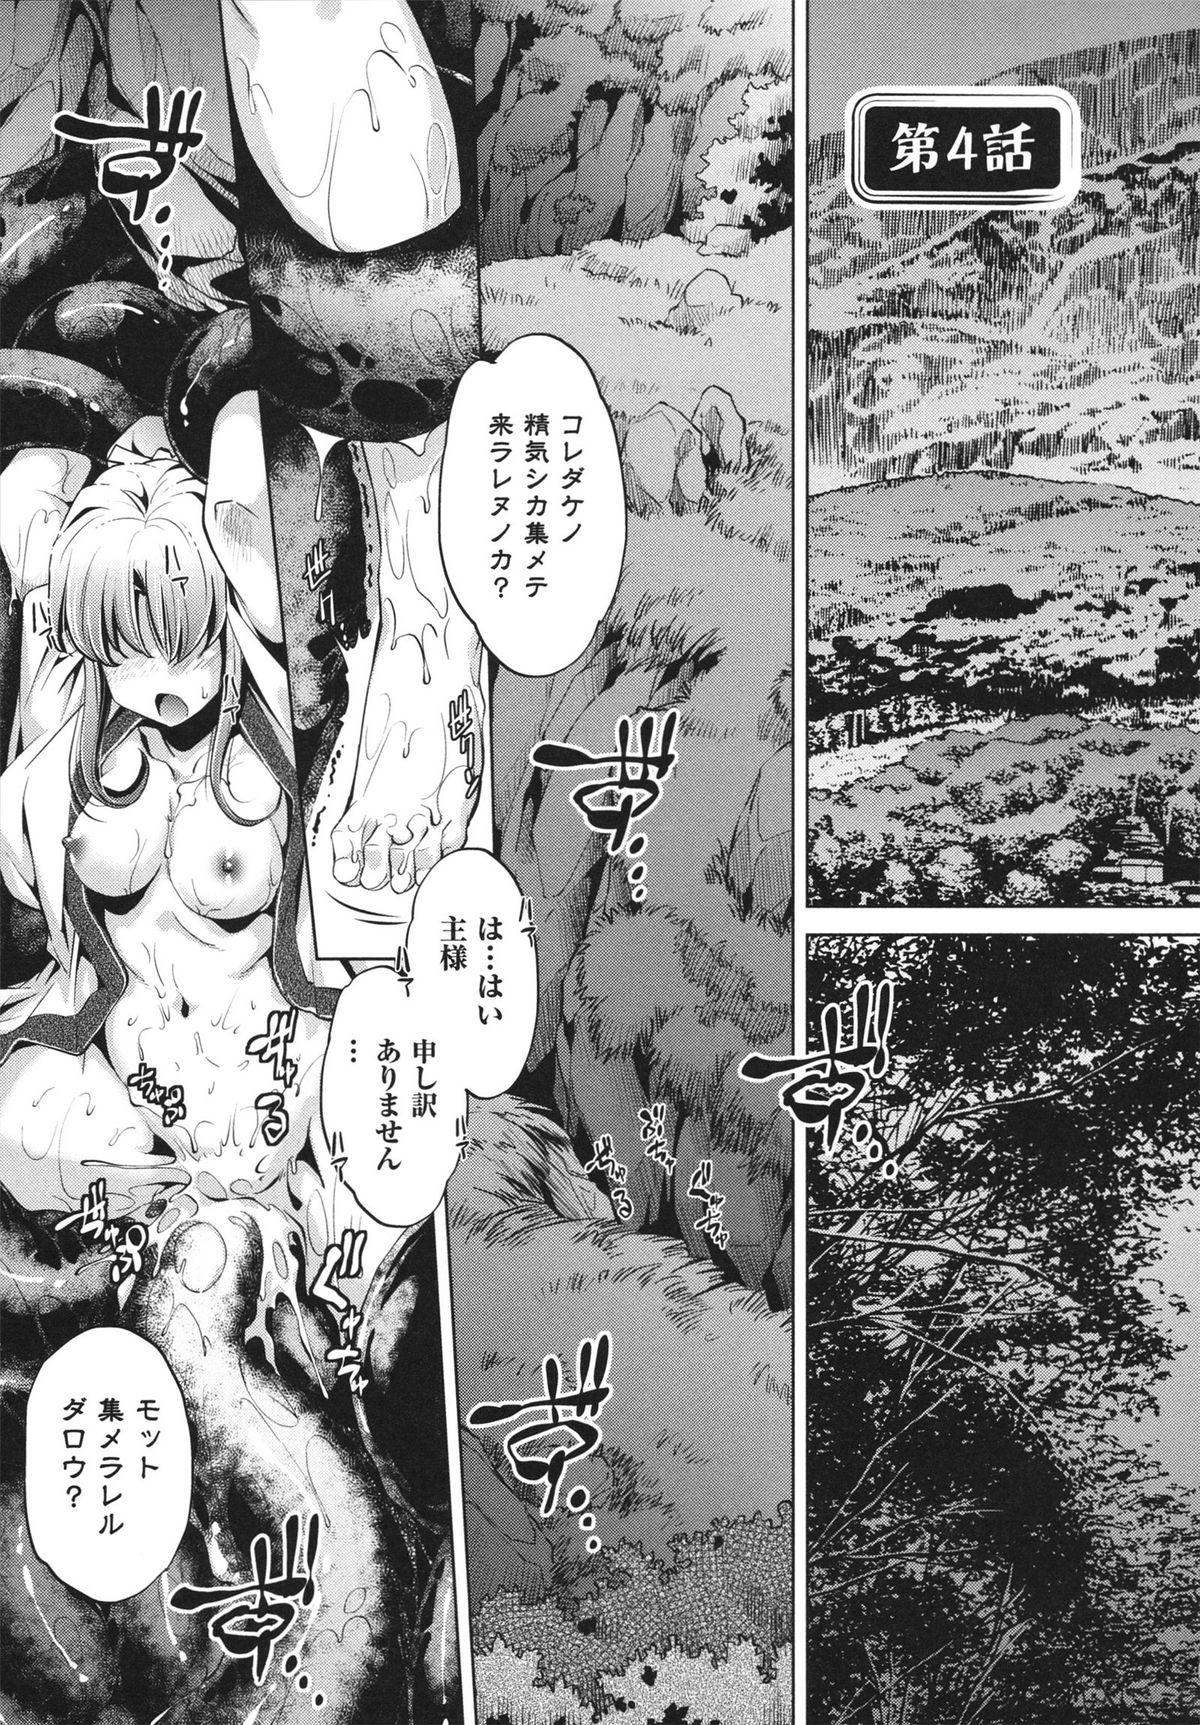 [Ootori Ryuuji] Shokushu wa Yawarakana Chibusa ni Makitsuki Onna-tachi no Ana wo Kakimidasu - Feeler coils around a soft breast and violates women's hole. 76